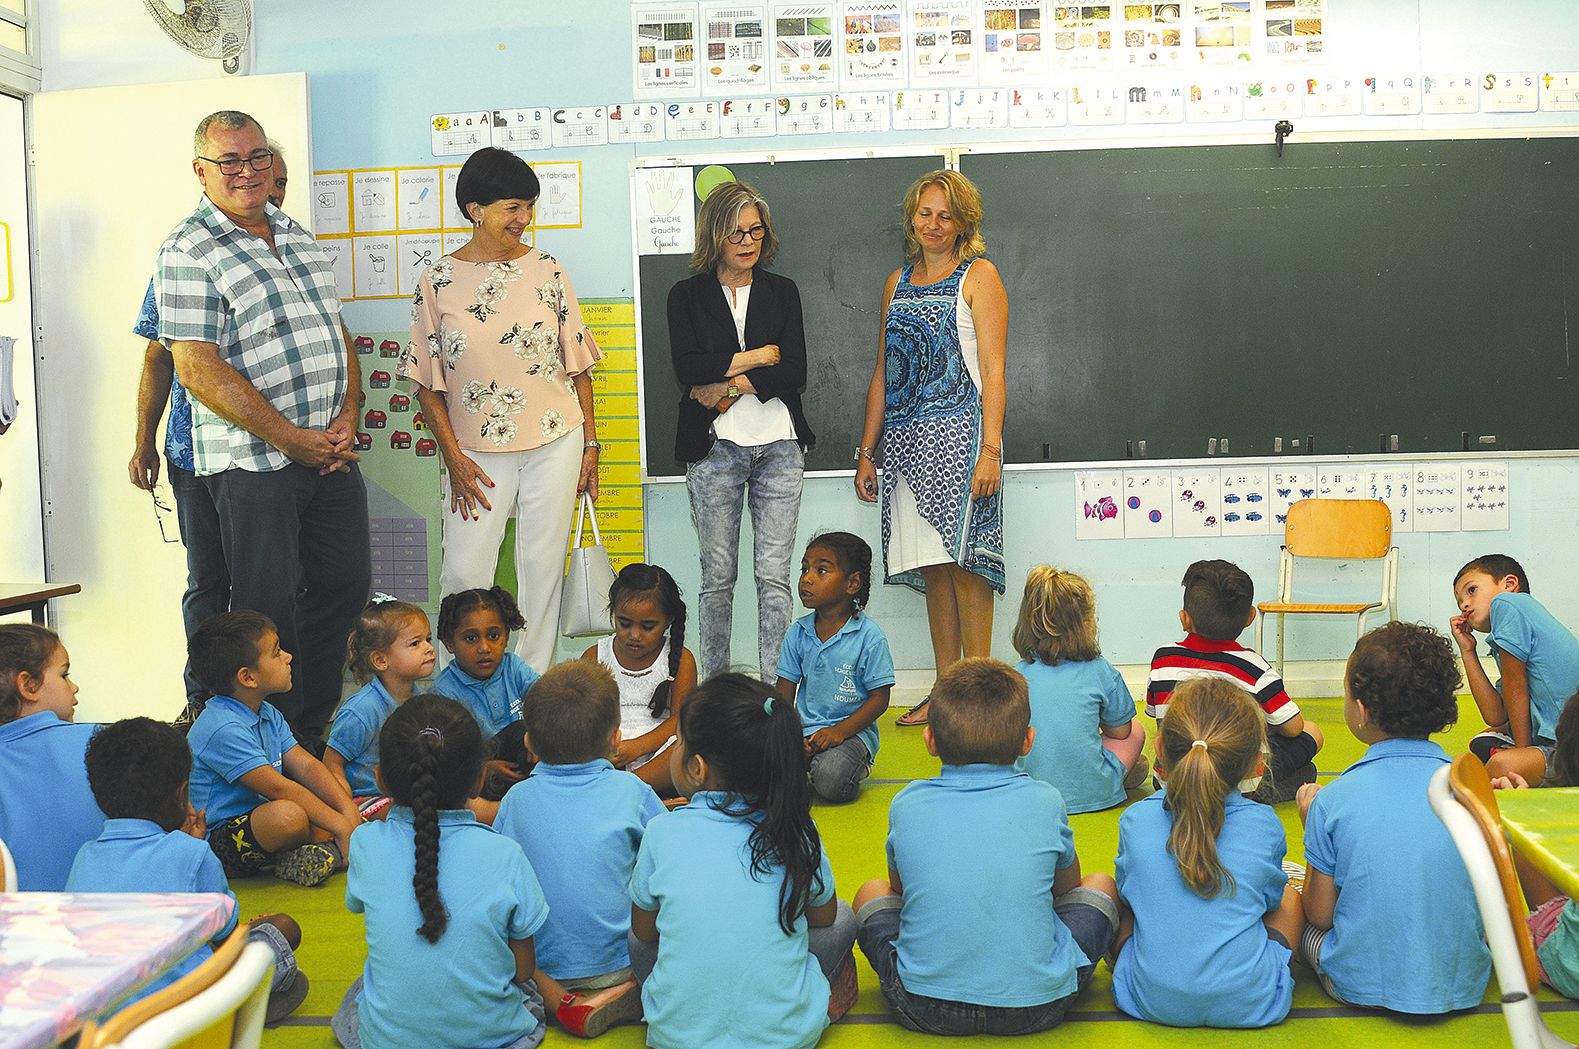 C’est la tradition. Chaque année, Sonia Lagarde visite une école primaire. Hier, la maire de Nouméa s’est rendue à Serge-Laigle, à Tina, en compagnie de Jean-Pierre Delrieu, premier adjoint. Après une rencontre avec le directeur, elle a fait un tour de l’